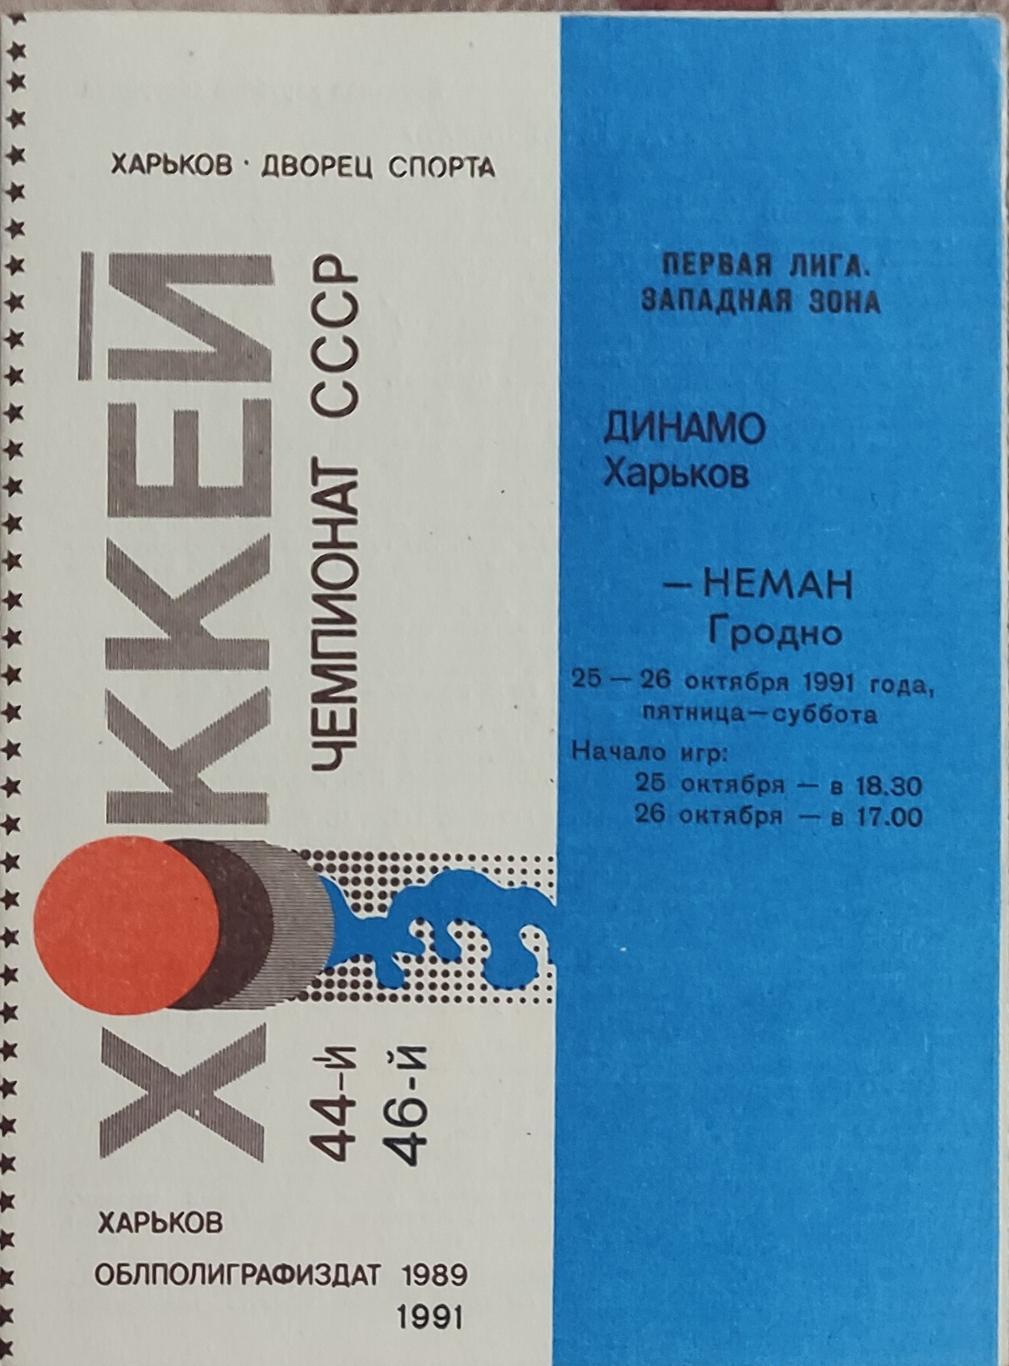 Динамо Харьков -Неман Гродно25-26.10.1991.